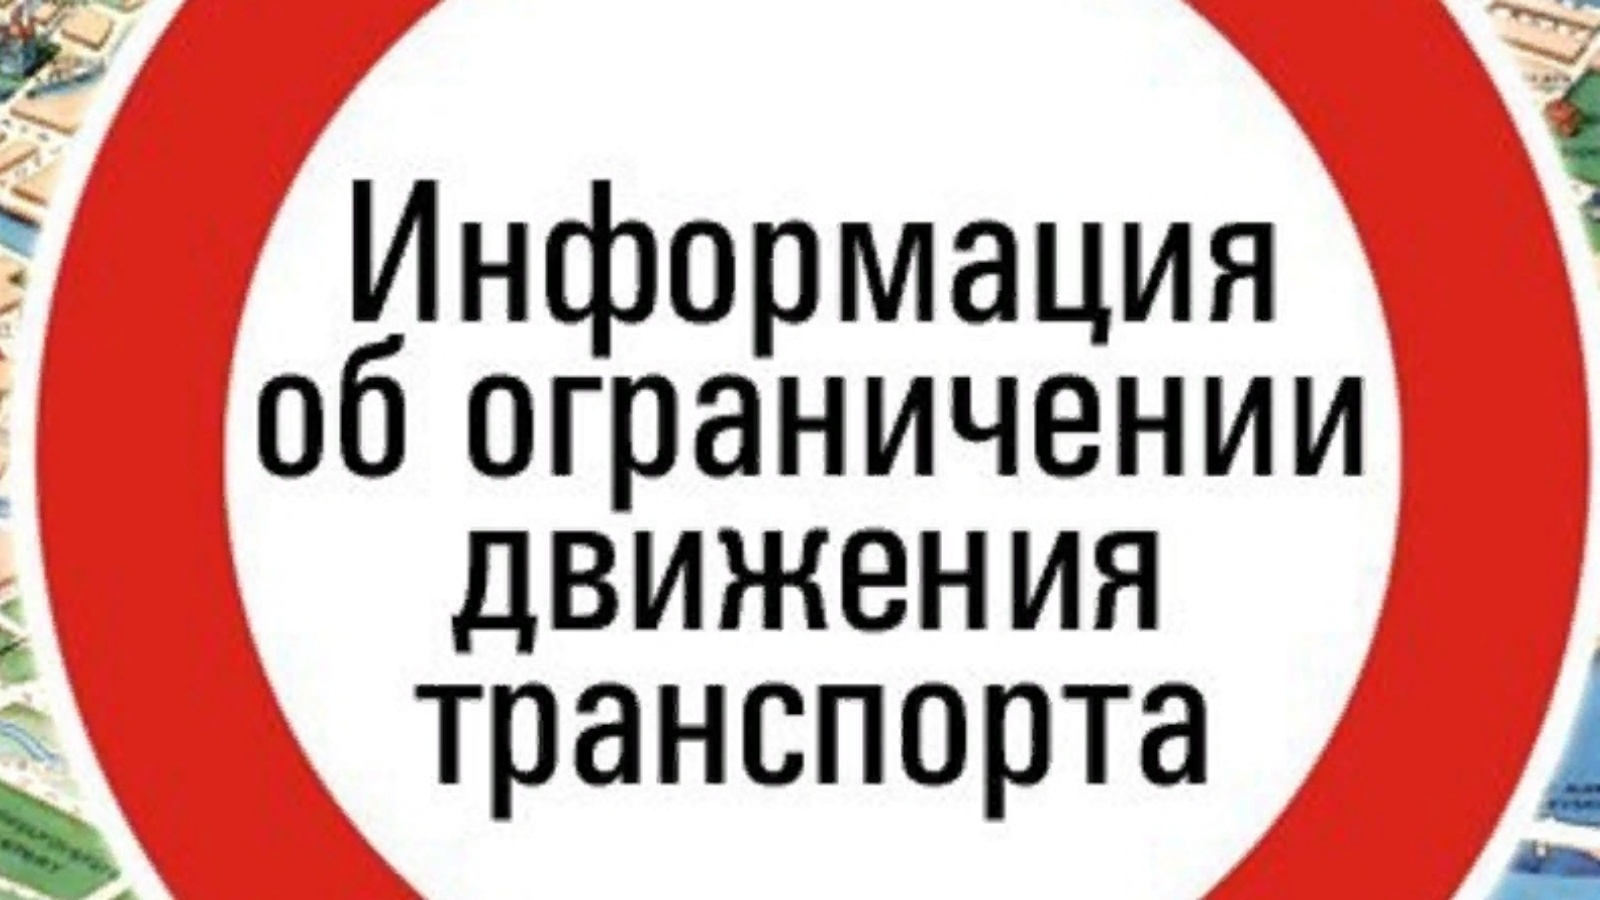 О снятии временного ограничения движения транспортных средств по автомобильным дорогам общего пользования регионального или межмуниципального значения Ульяновской области.